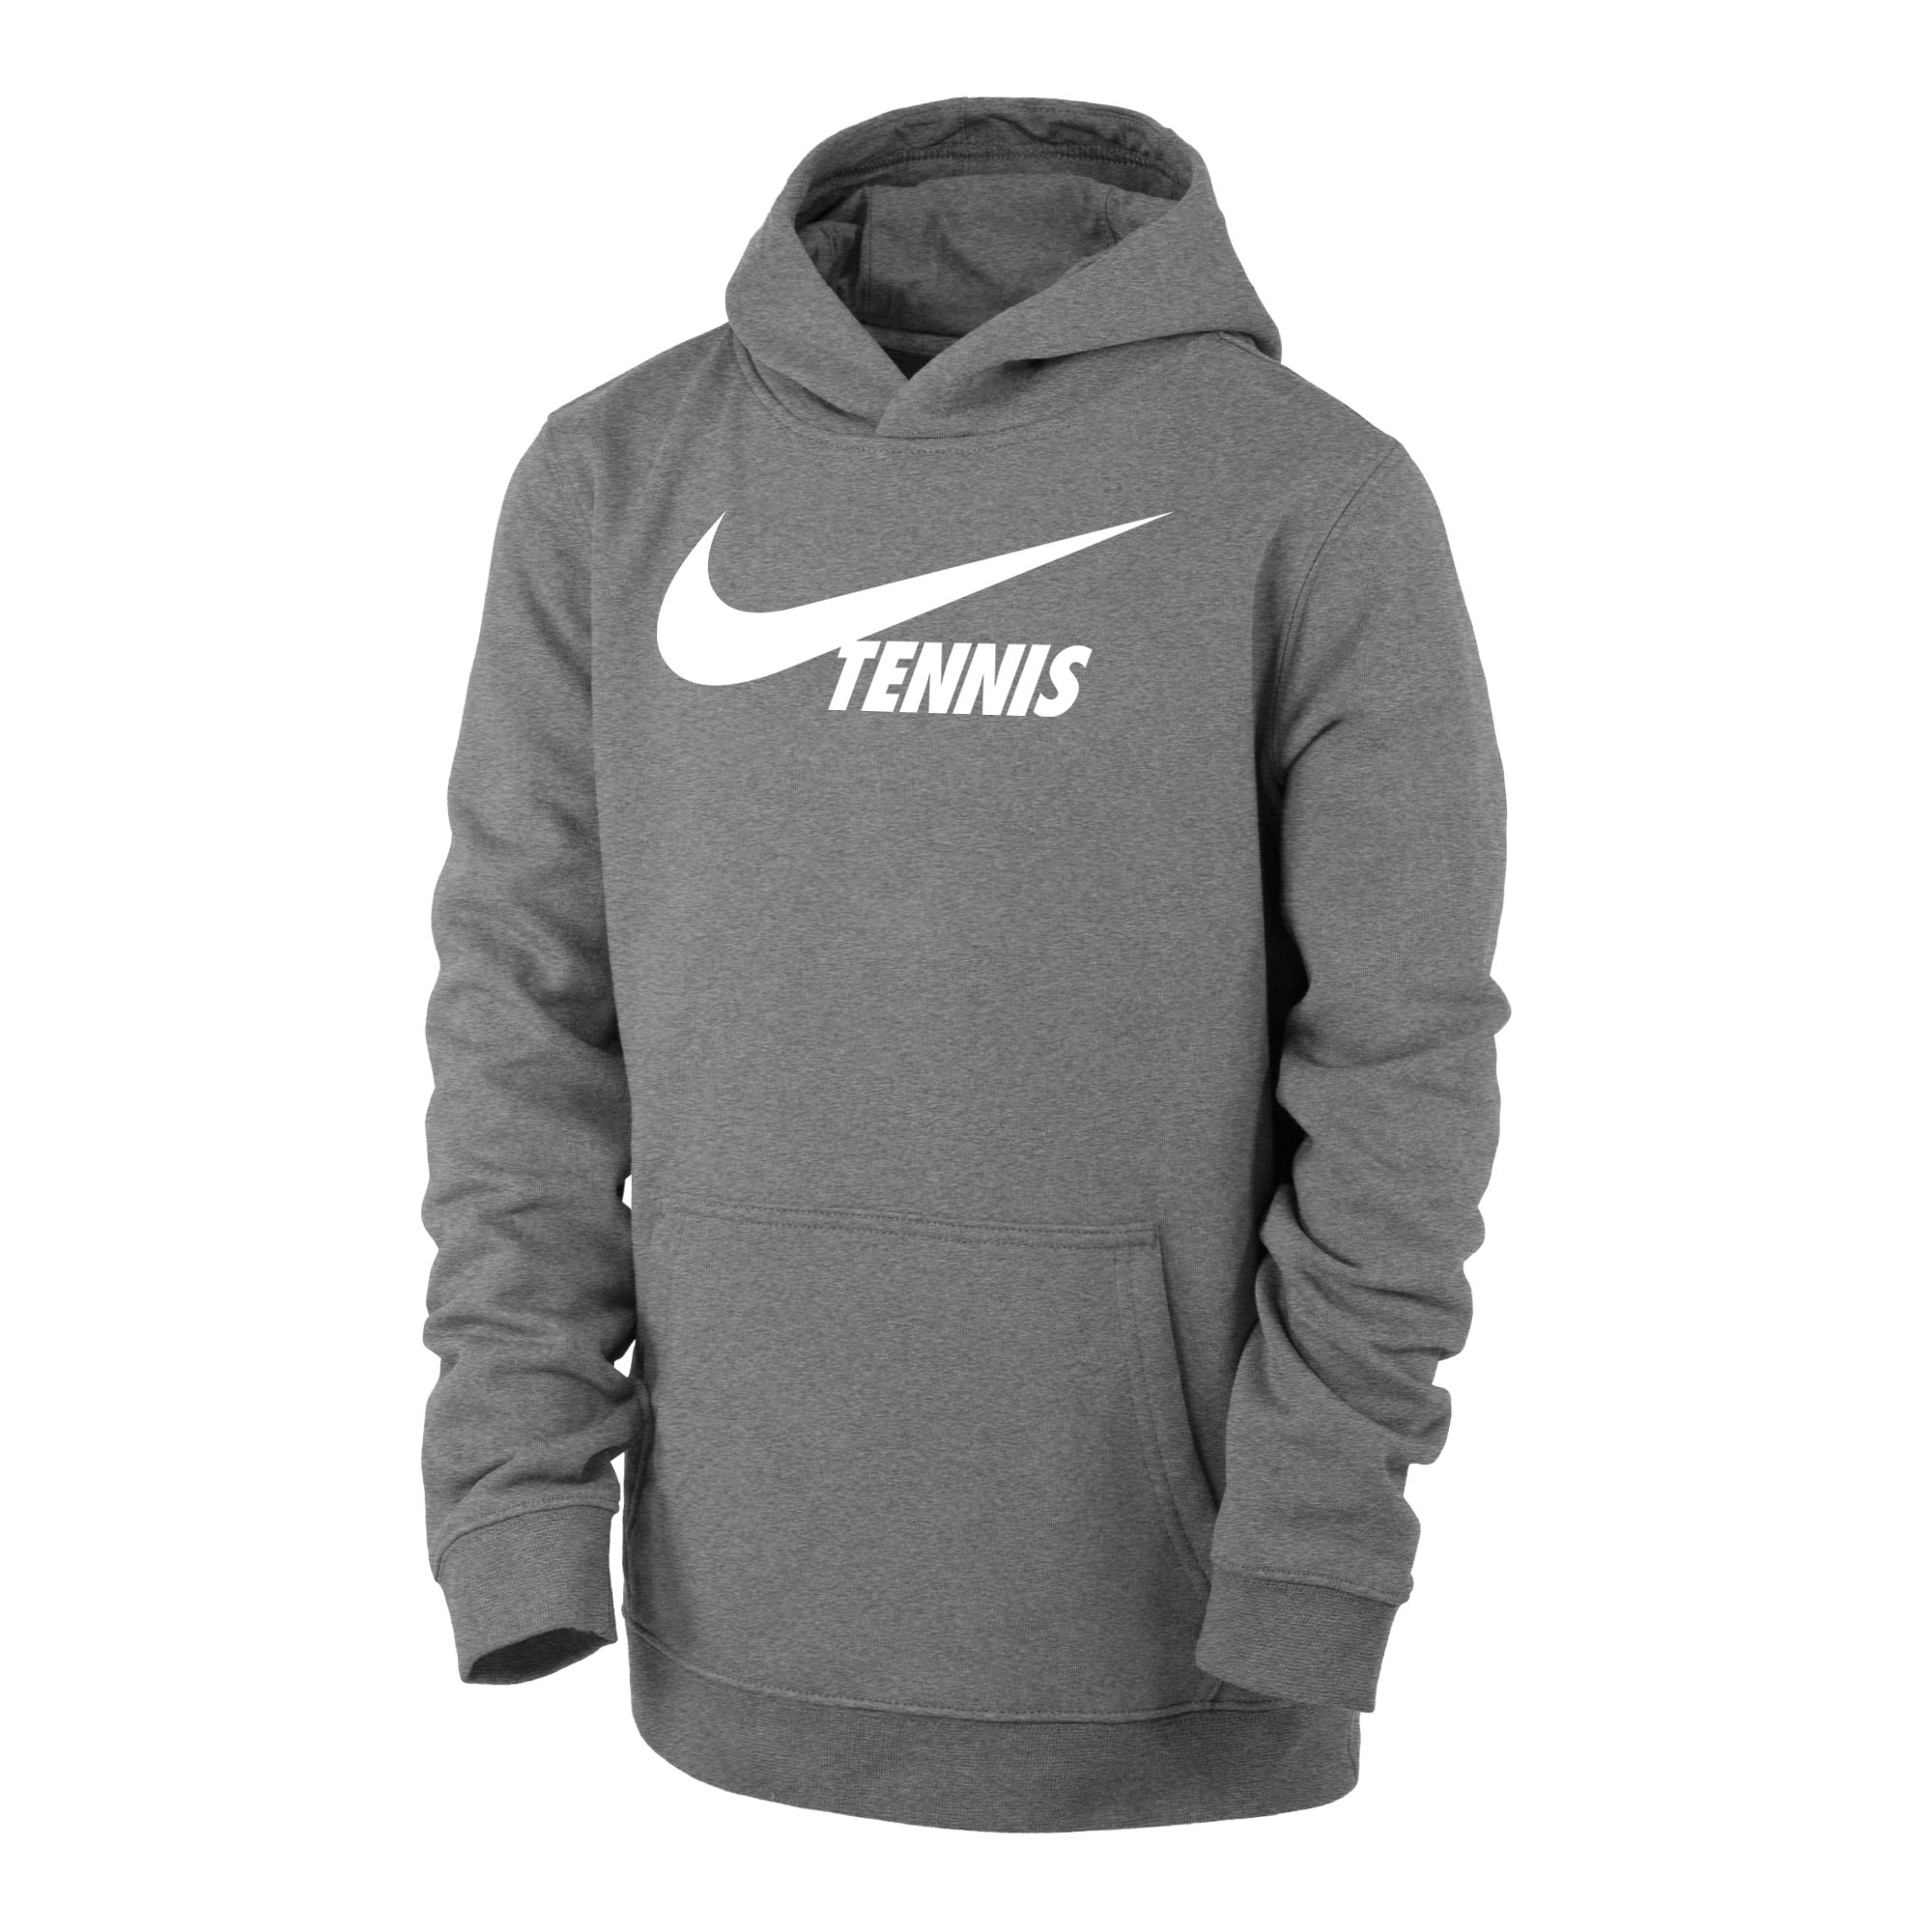 Nike Tennis Graphic Club Boys' Tennis Hoodie Grey